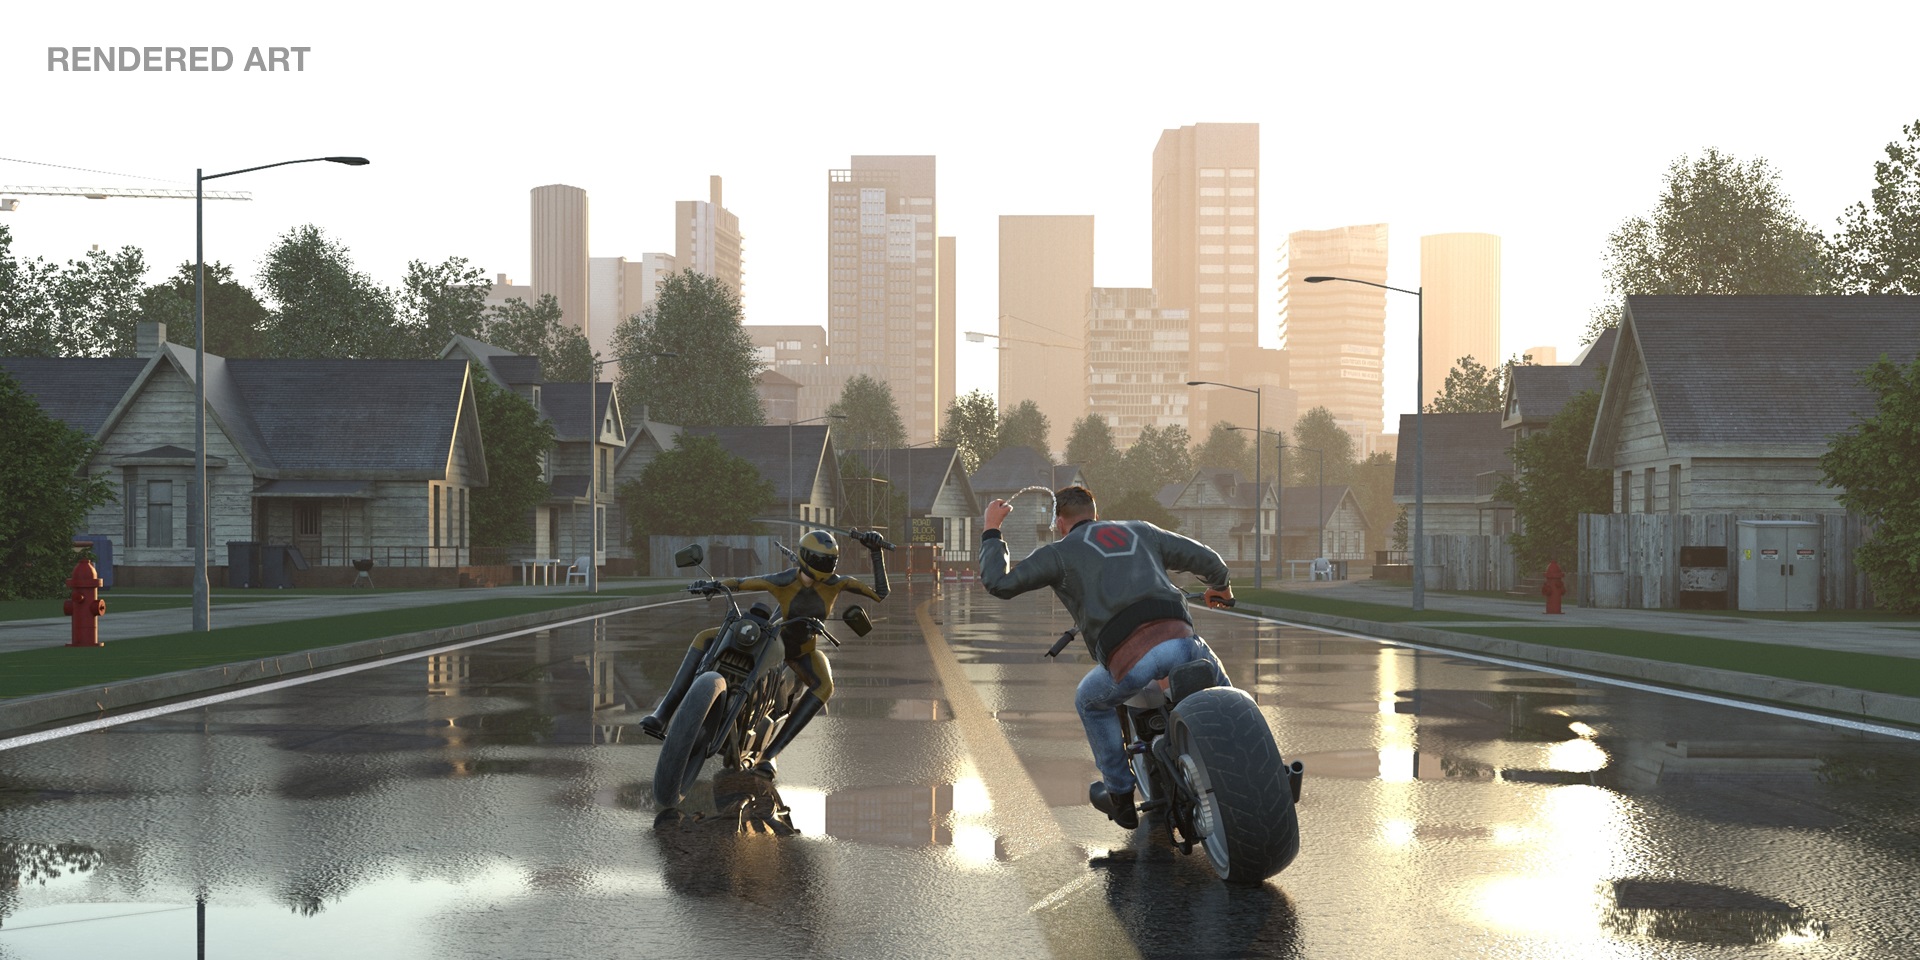 El 14 de noviembre llegará Road Rage, pura adrenalina para PS4 y Xbox One de la mano de BadLand Games